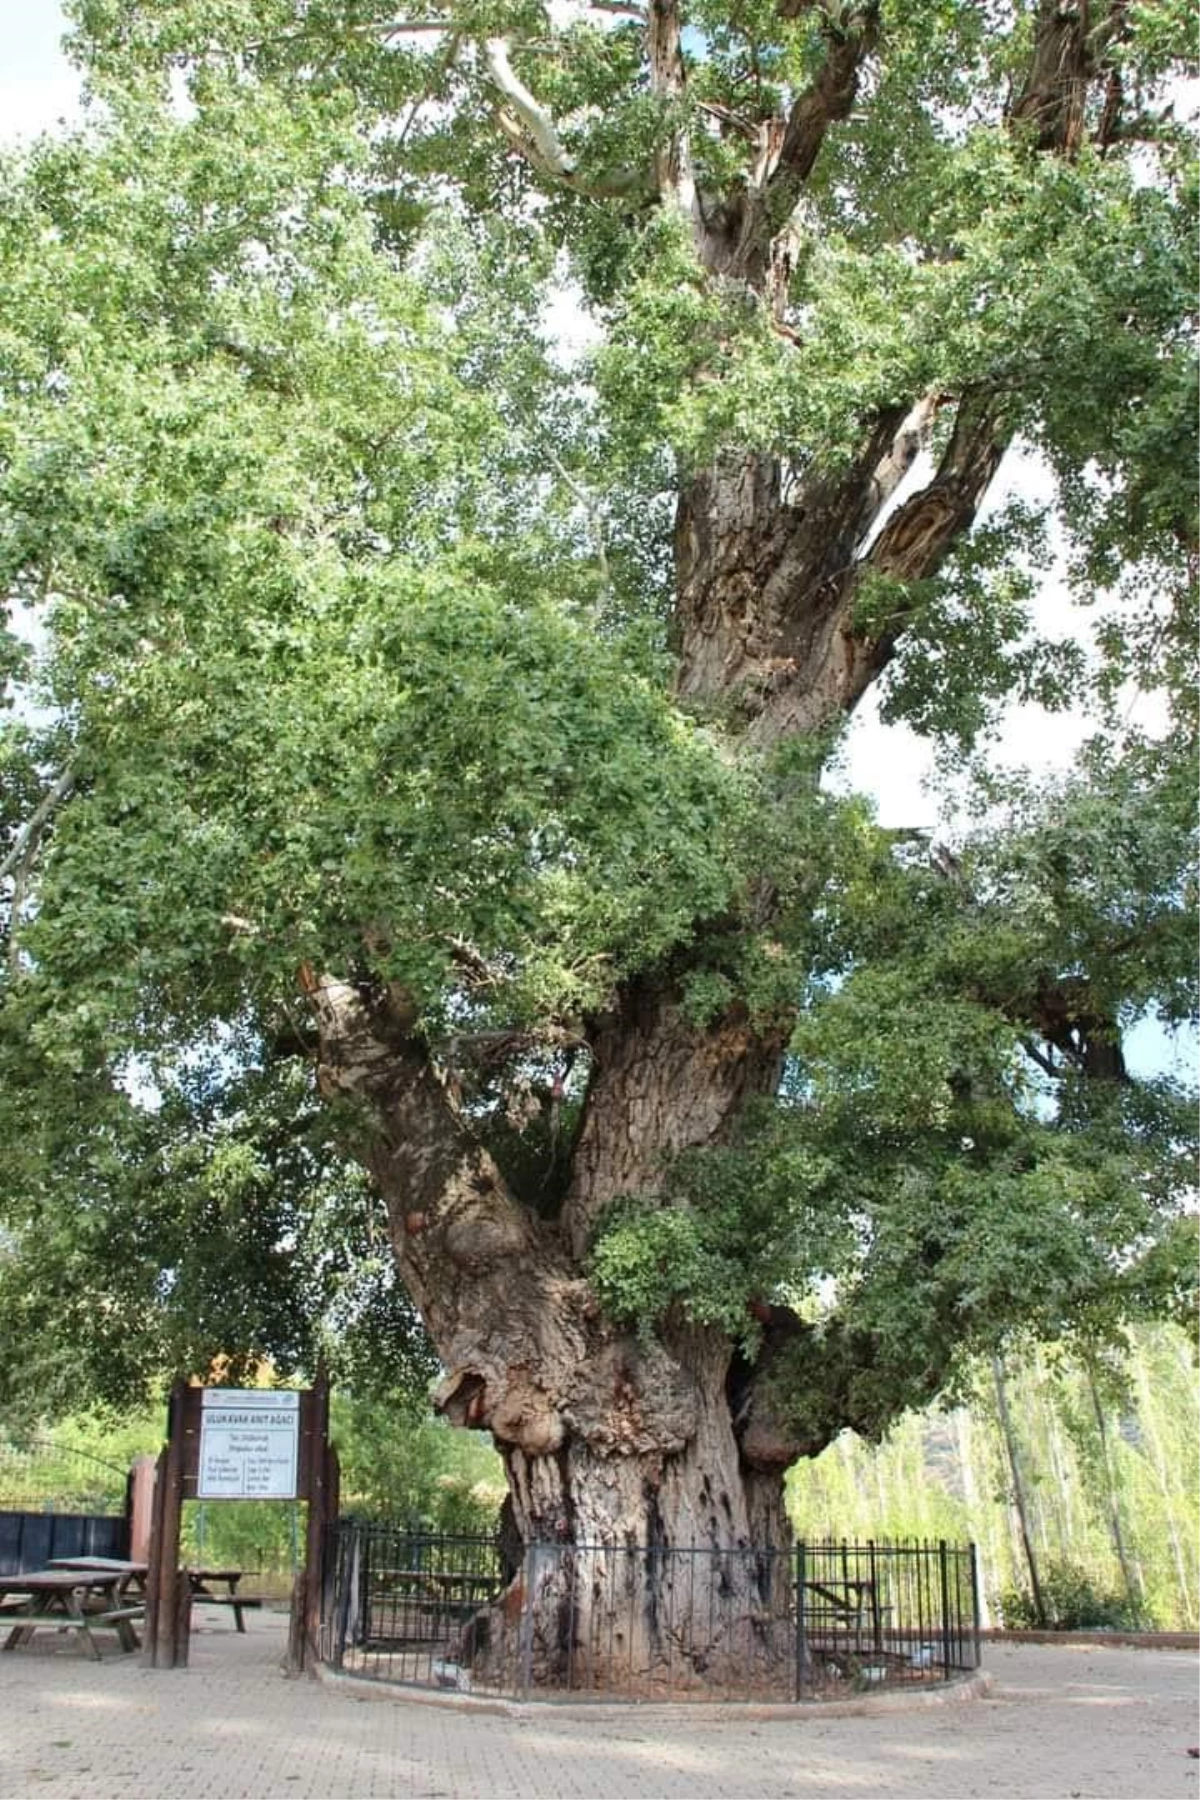 Nefes Alan Tarih Yozgat\'taki Anıt Ağaçlar